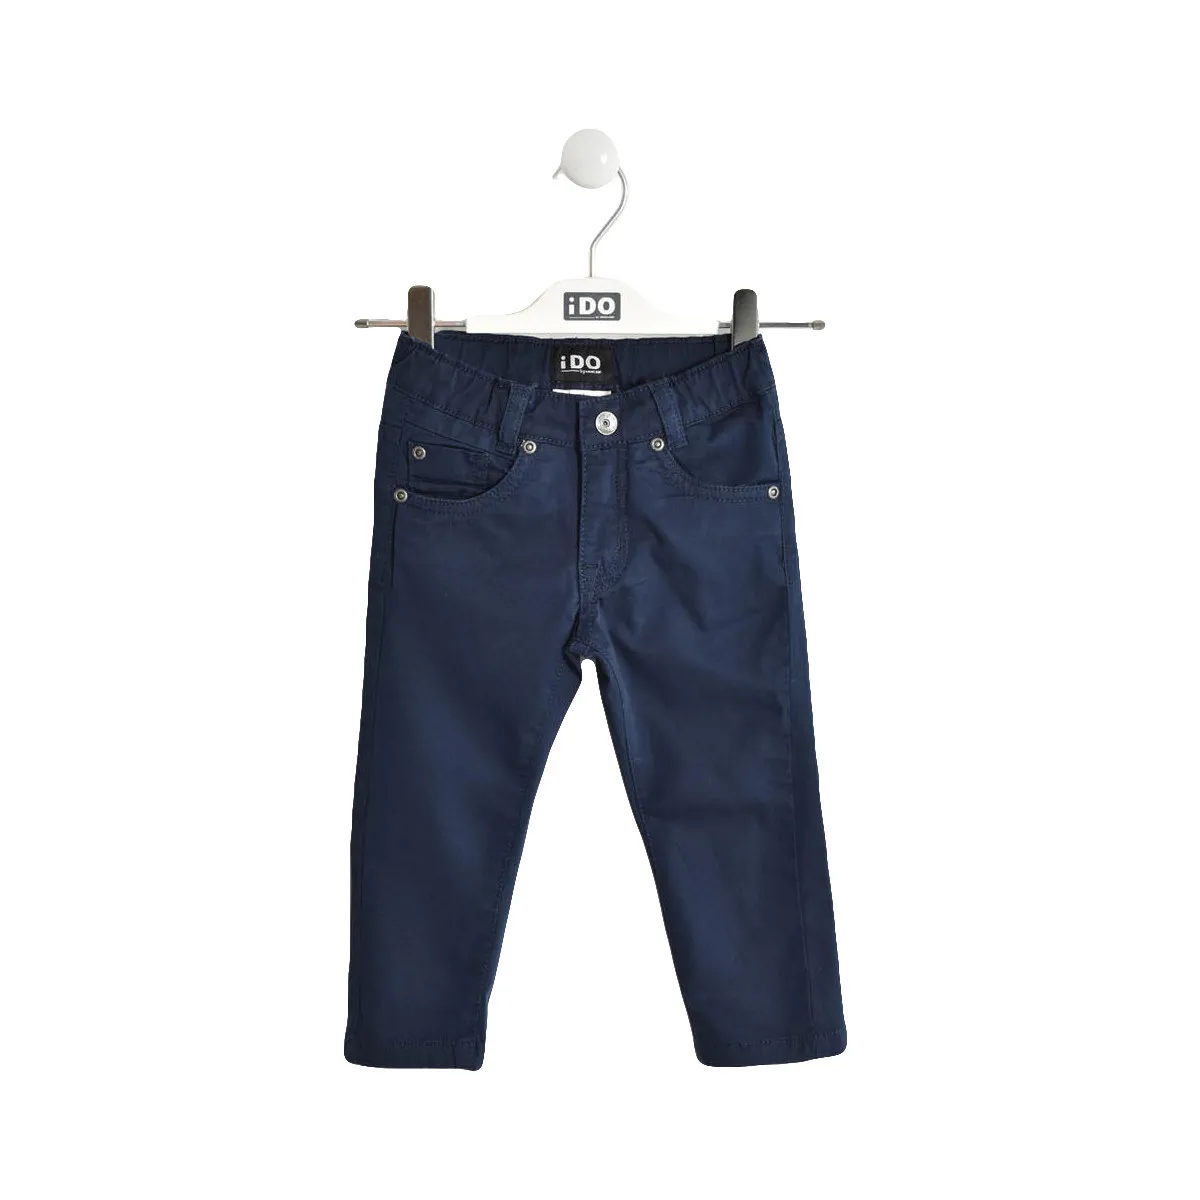 IDO pantalone W231, 86-7